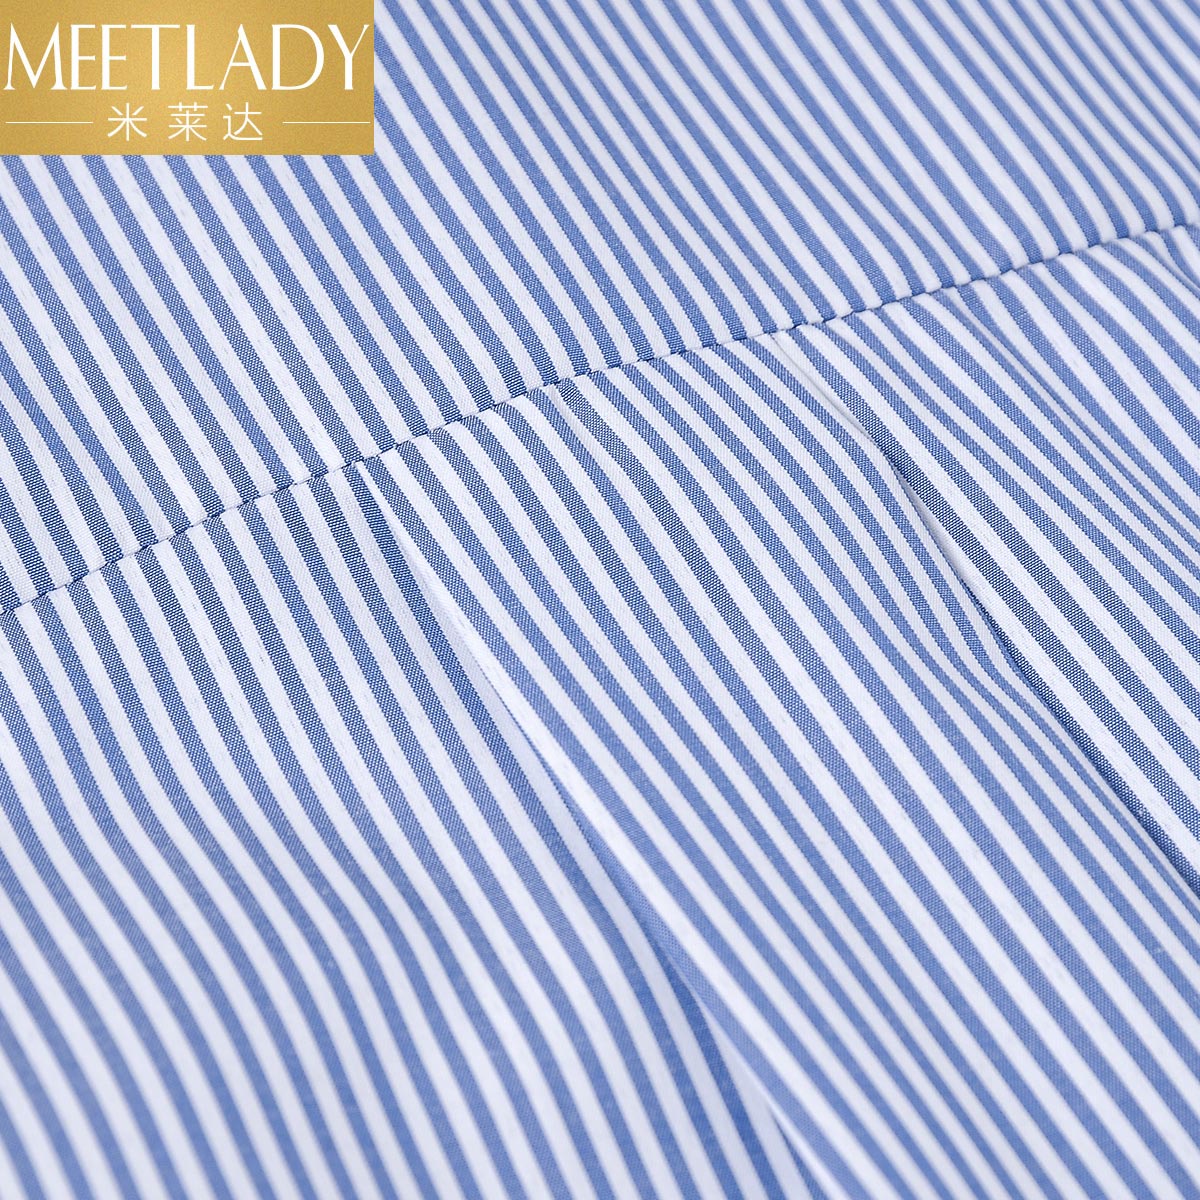 【宋佳明星同款】米莱达2017春装新款 通勤翻边七分袖条纹衬衫 女产品展示图3